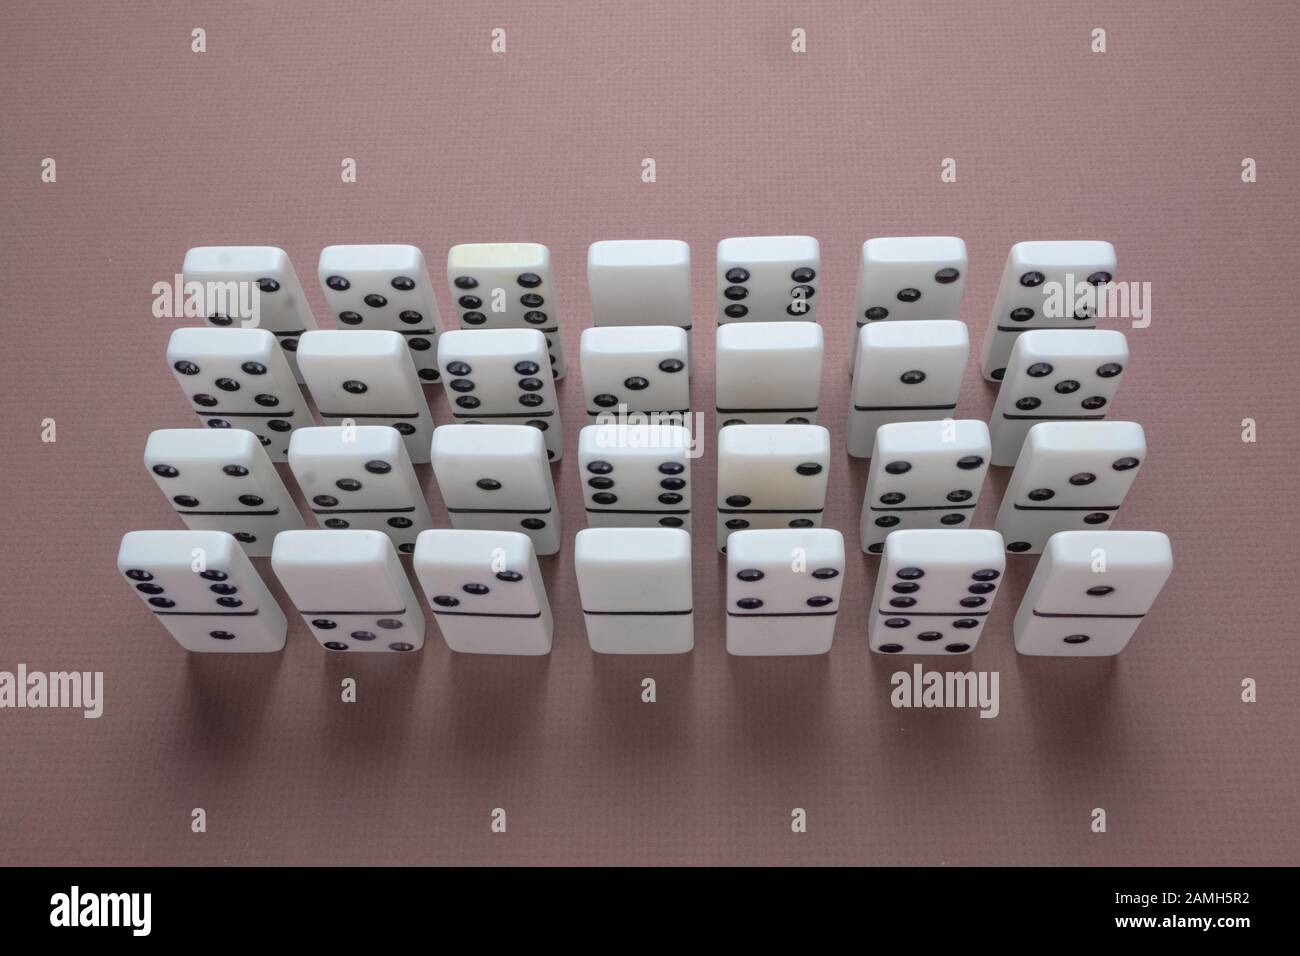 Set di piastrelle Domino utilizzato per il gioco da tavolo di Dominos. Piastrelle disposte in 4 file di 7 piastrelle. Foto Stock